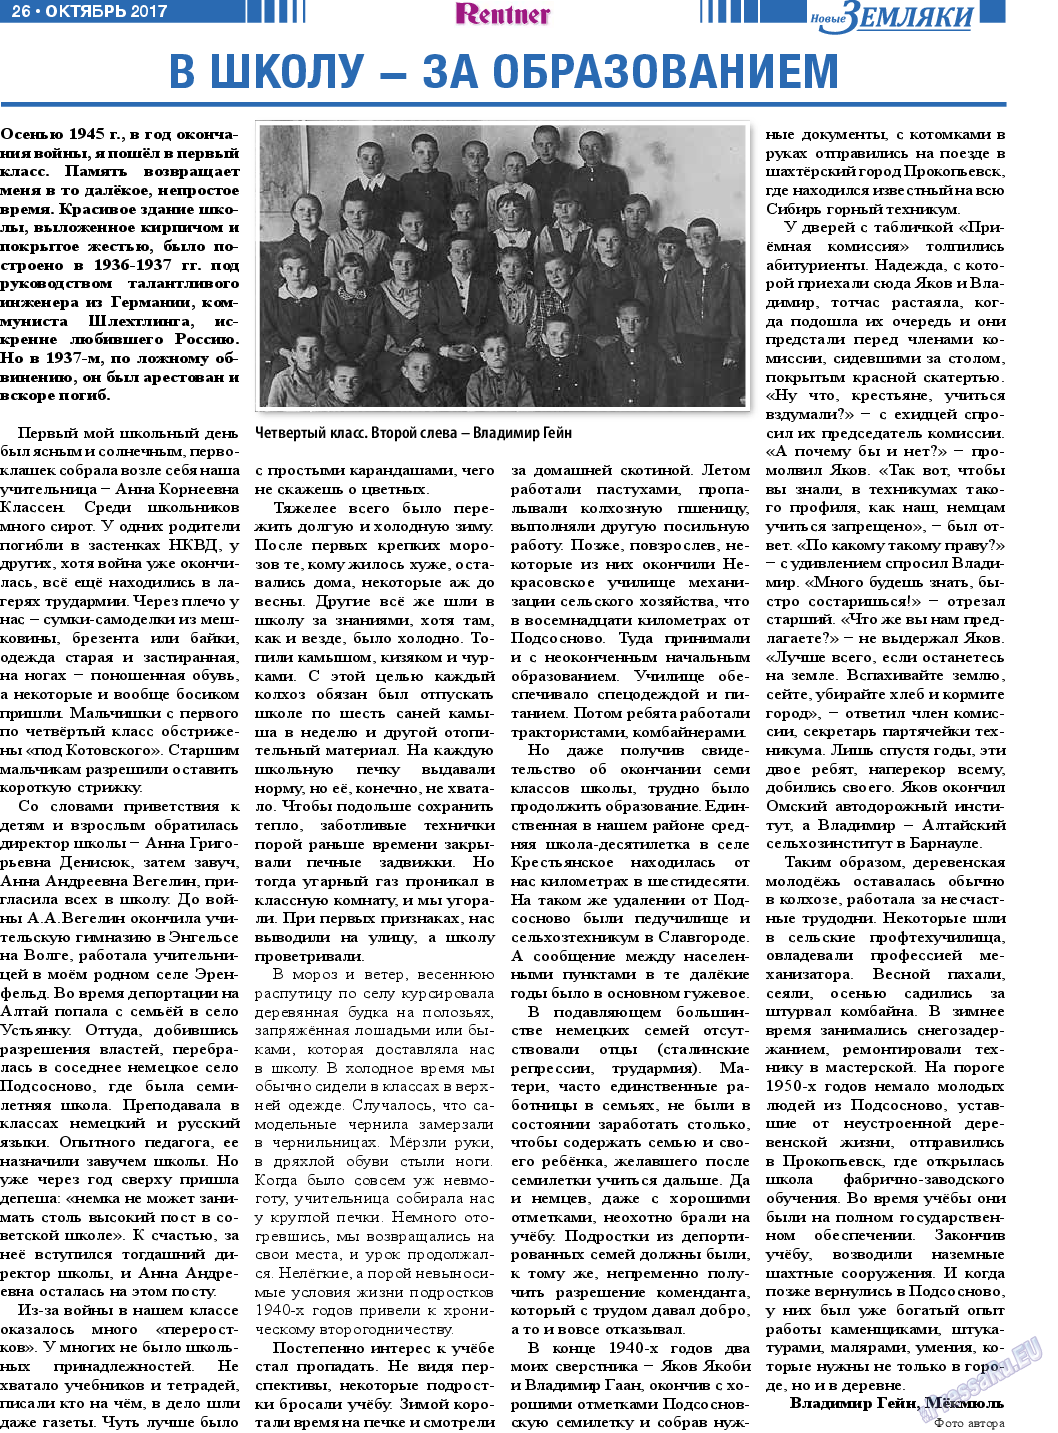 Новые Земляки, газета. 2017 №10 стр.26